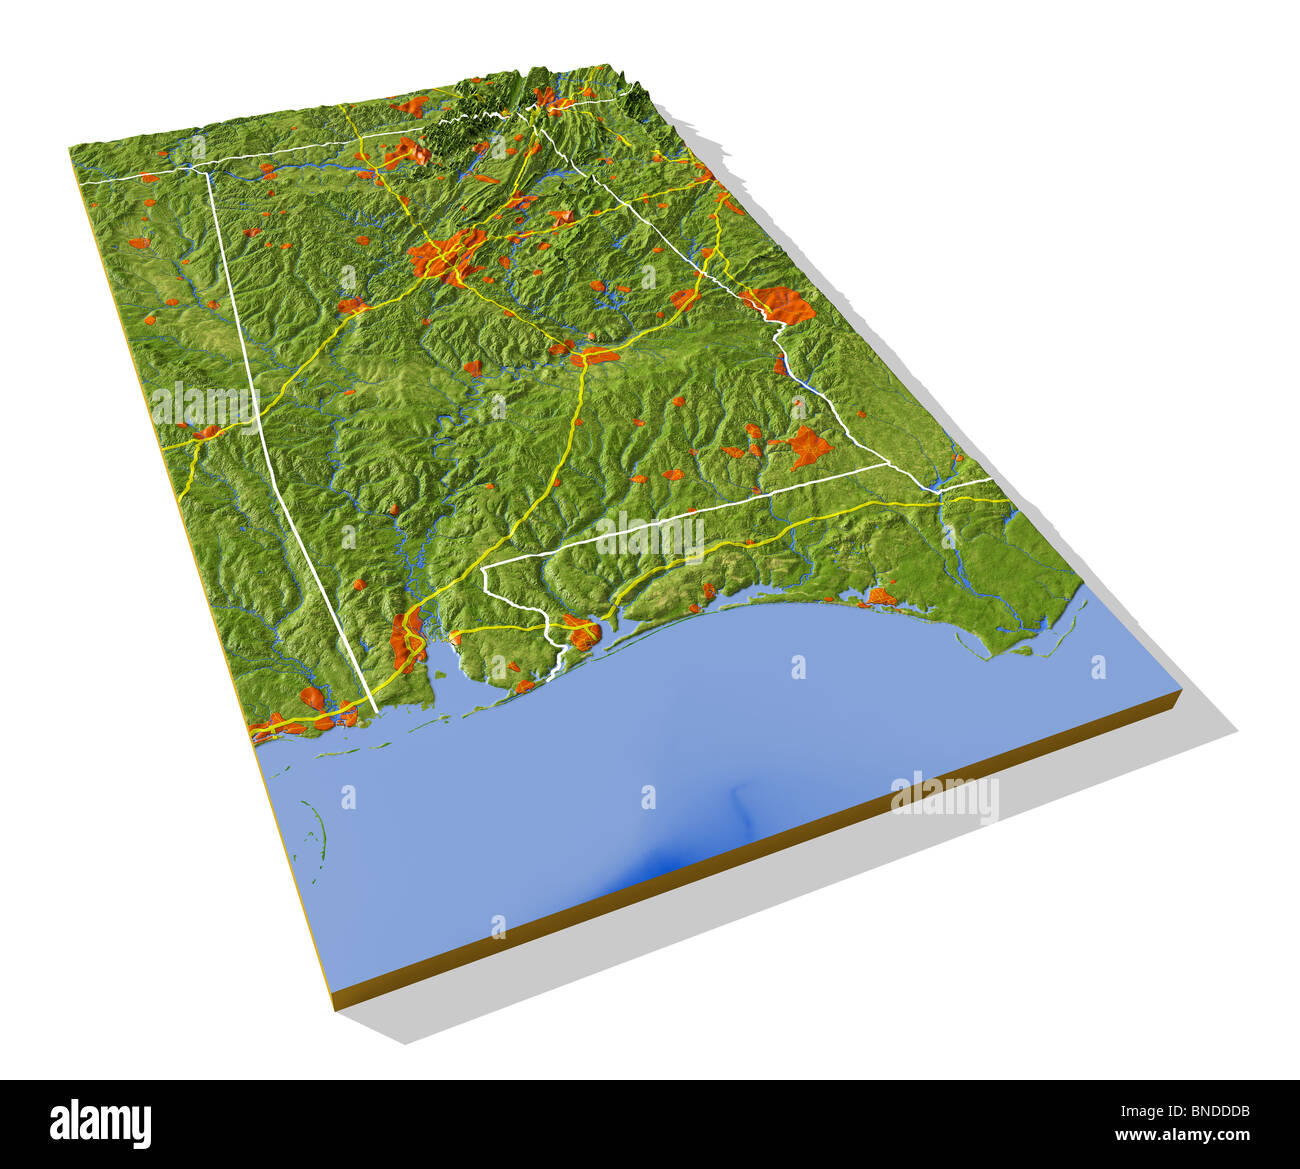 Alabama, 3D Reliefkarte mit städtischen Gebieten, Autobahnen und Grenzen. Stockfoto